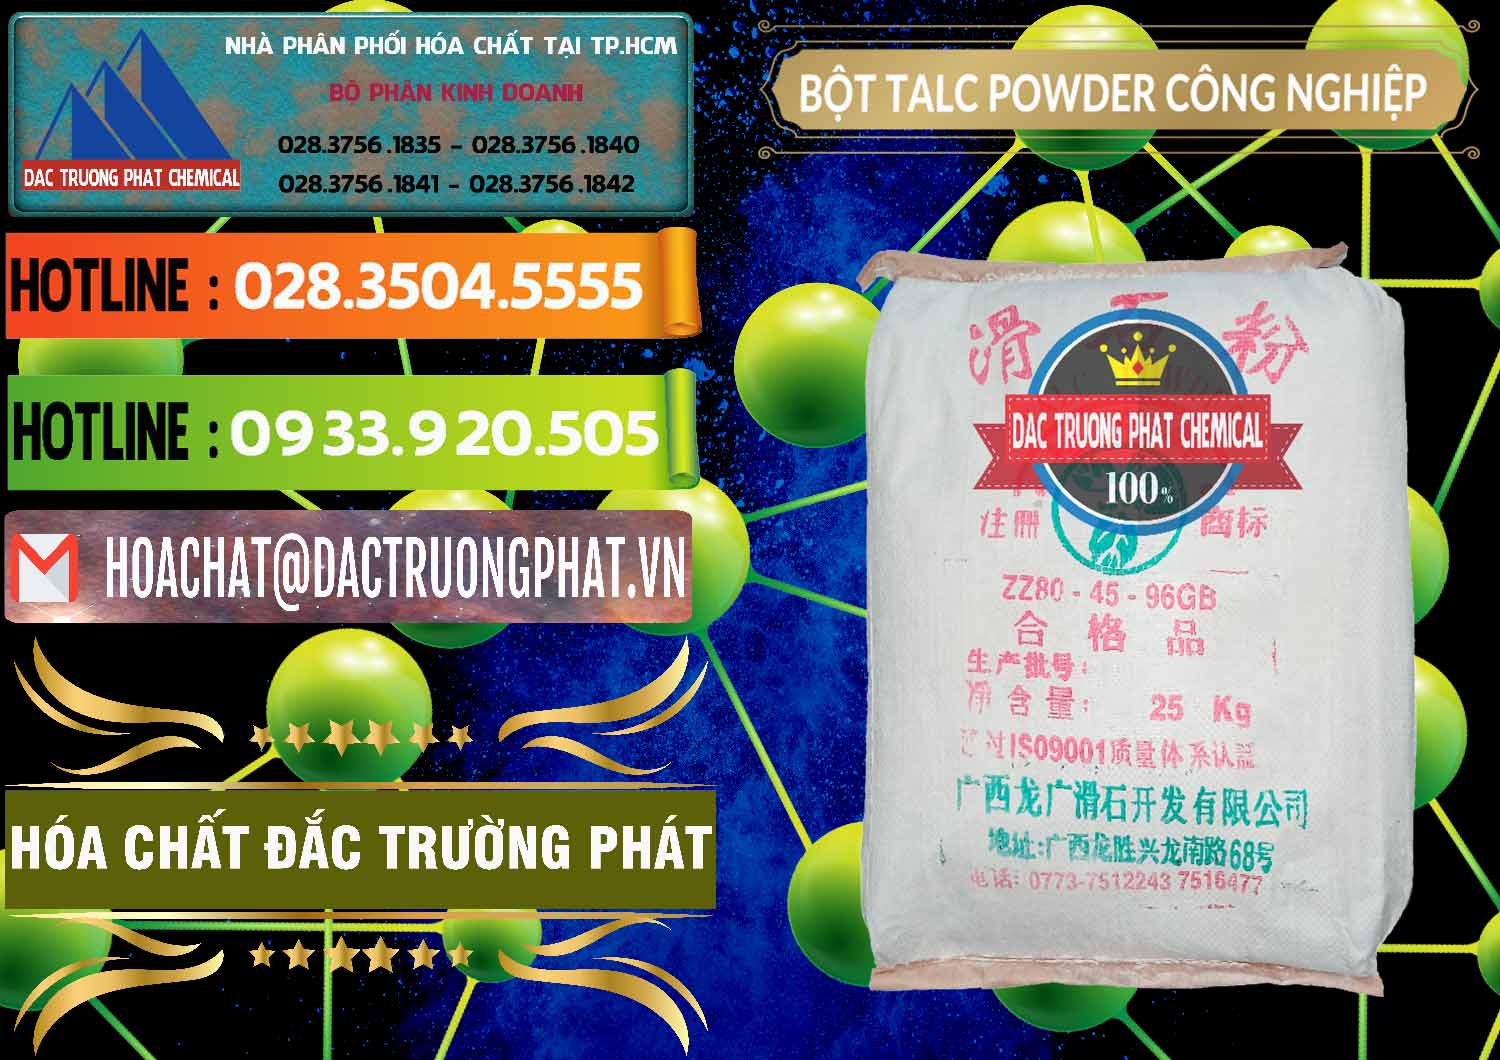 Nơi kinh doanh và bán Bột Talc Powder Công Nghiệp Trung Quốc China - 0037 - Công ty cung cấp _ phân phối hóa chất tại TP.HCM - cungcaphoachat.com.vn